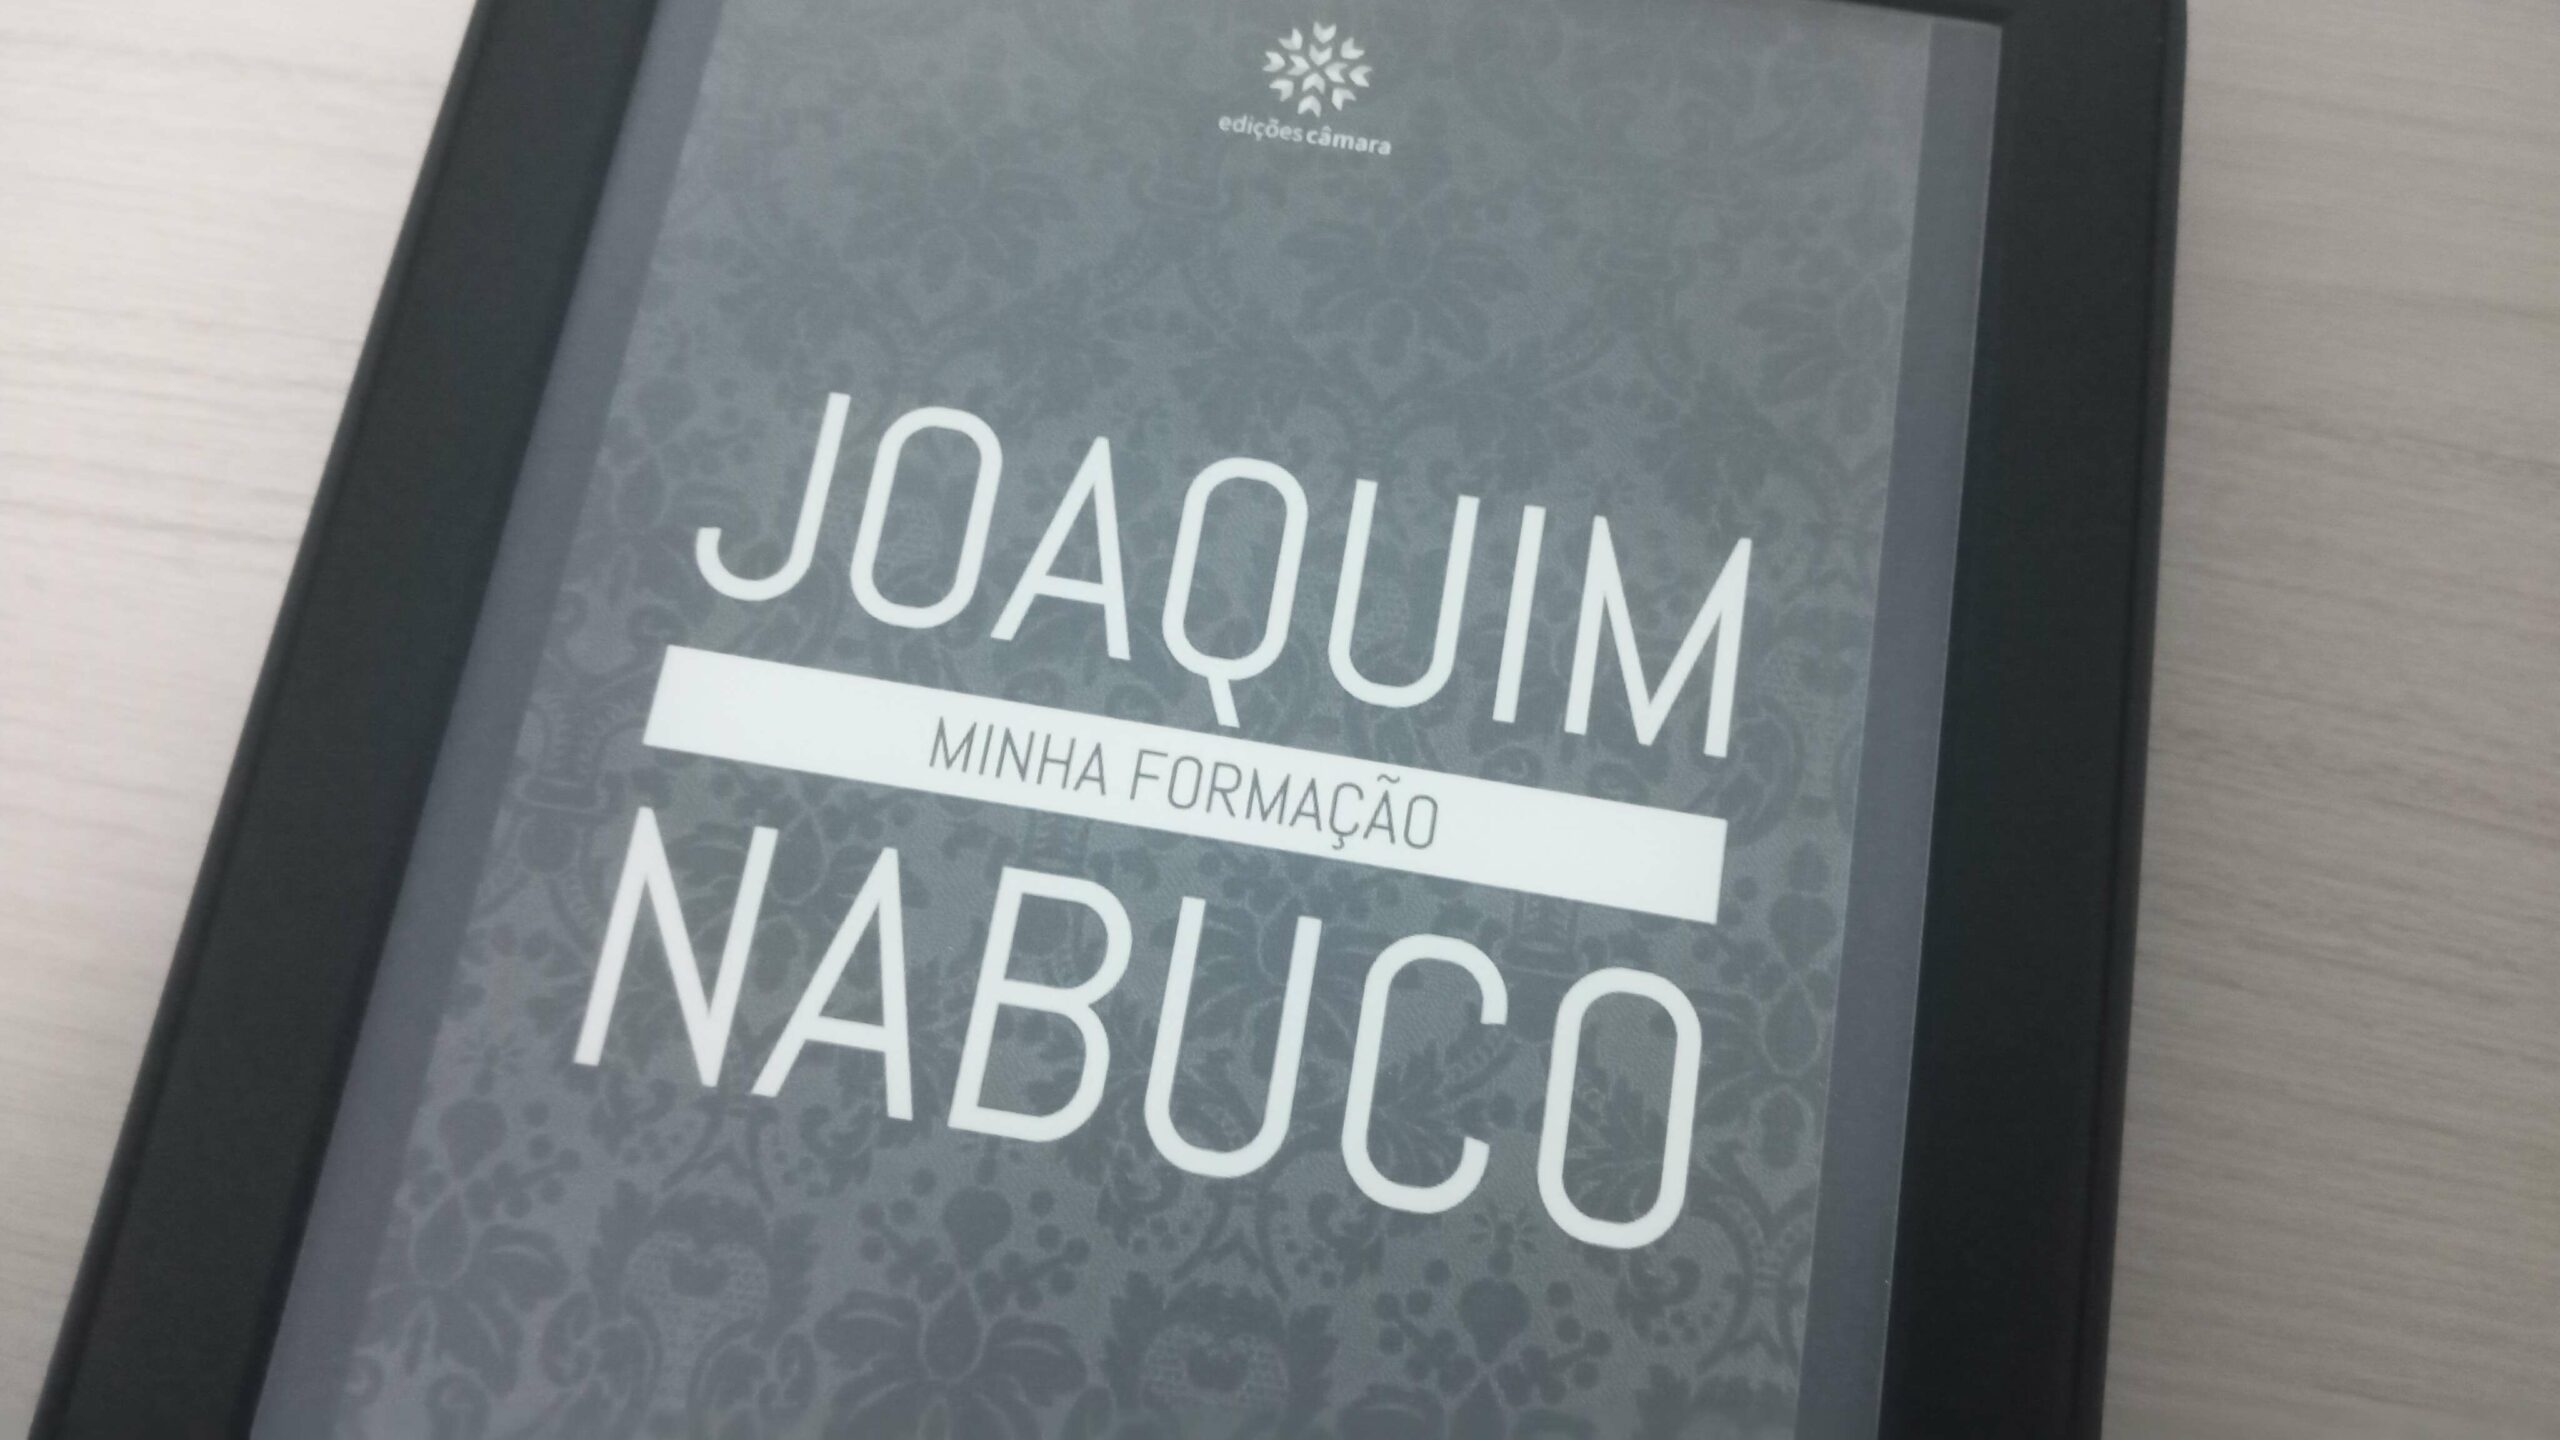 Minha Formação (Joaquim Nabuco)